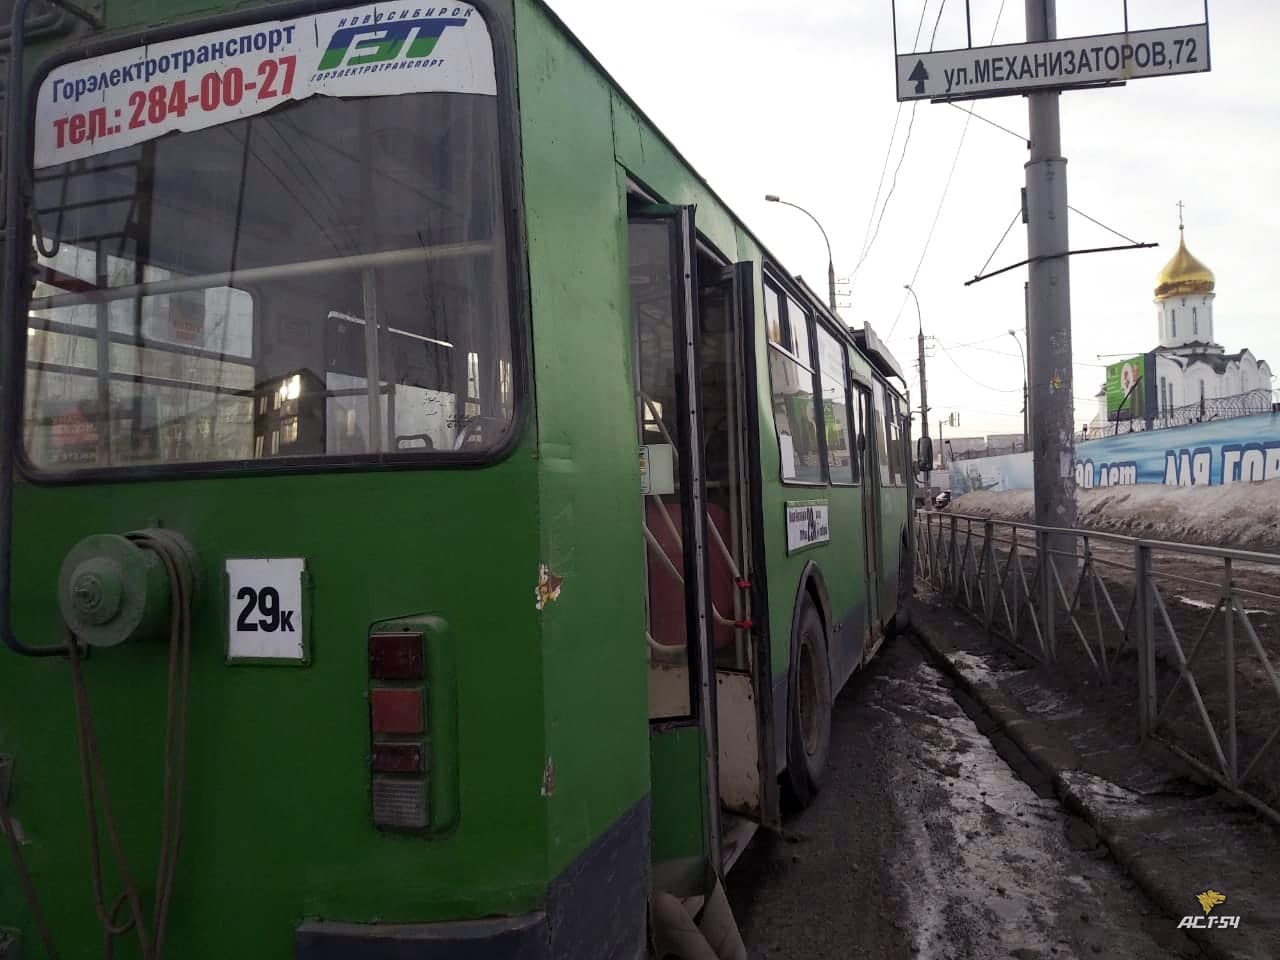 «Спасибо, что не загорелся»: в Новосибирске у троллейбуса отказали тормоза